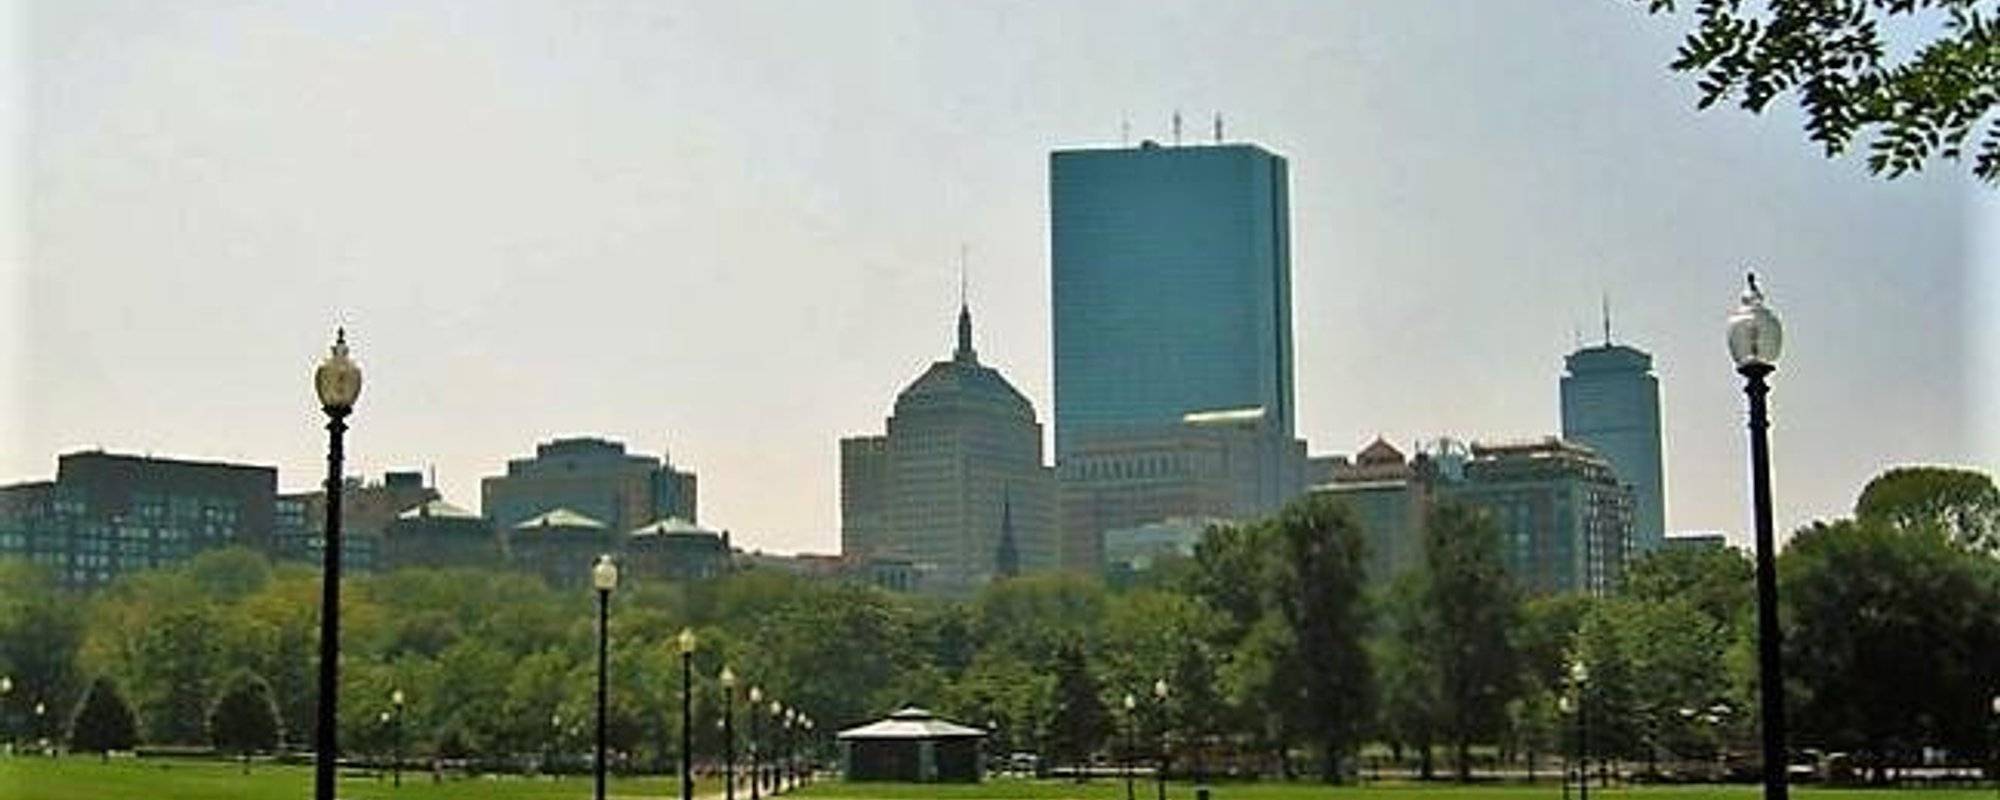 Cityscape Photography: skyline of Boston, Massachusetts